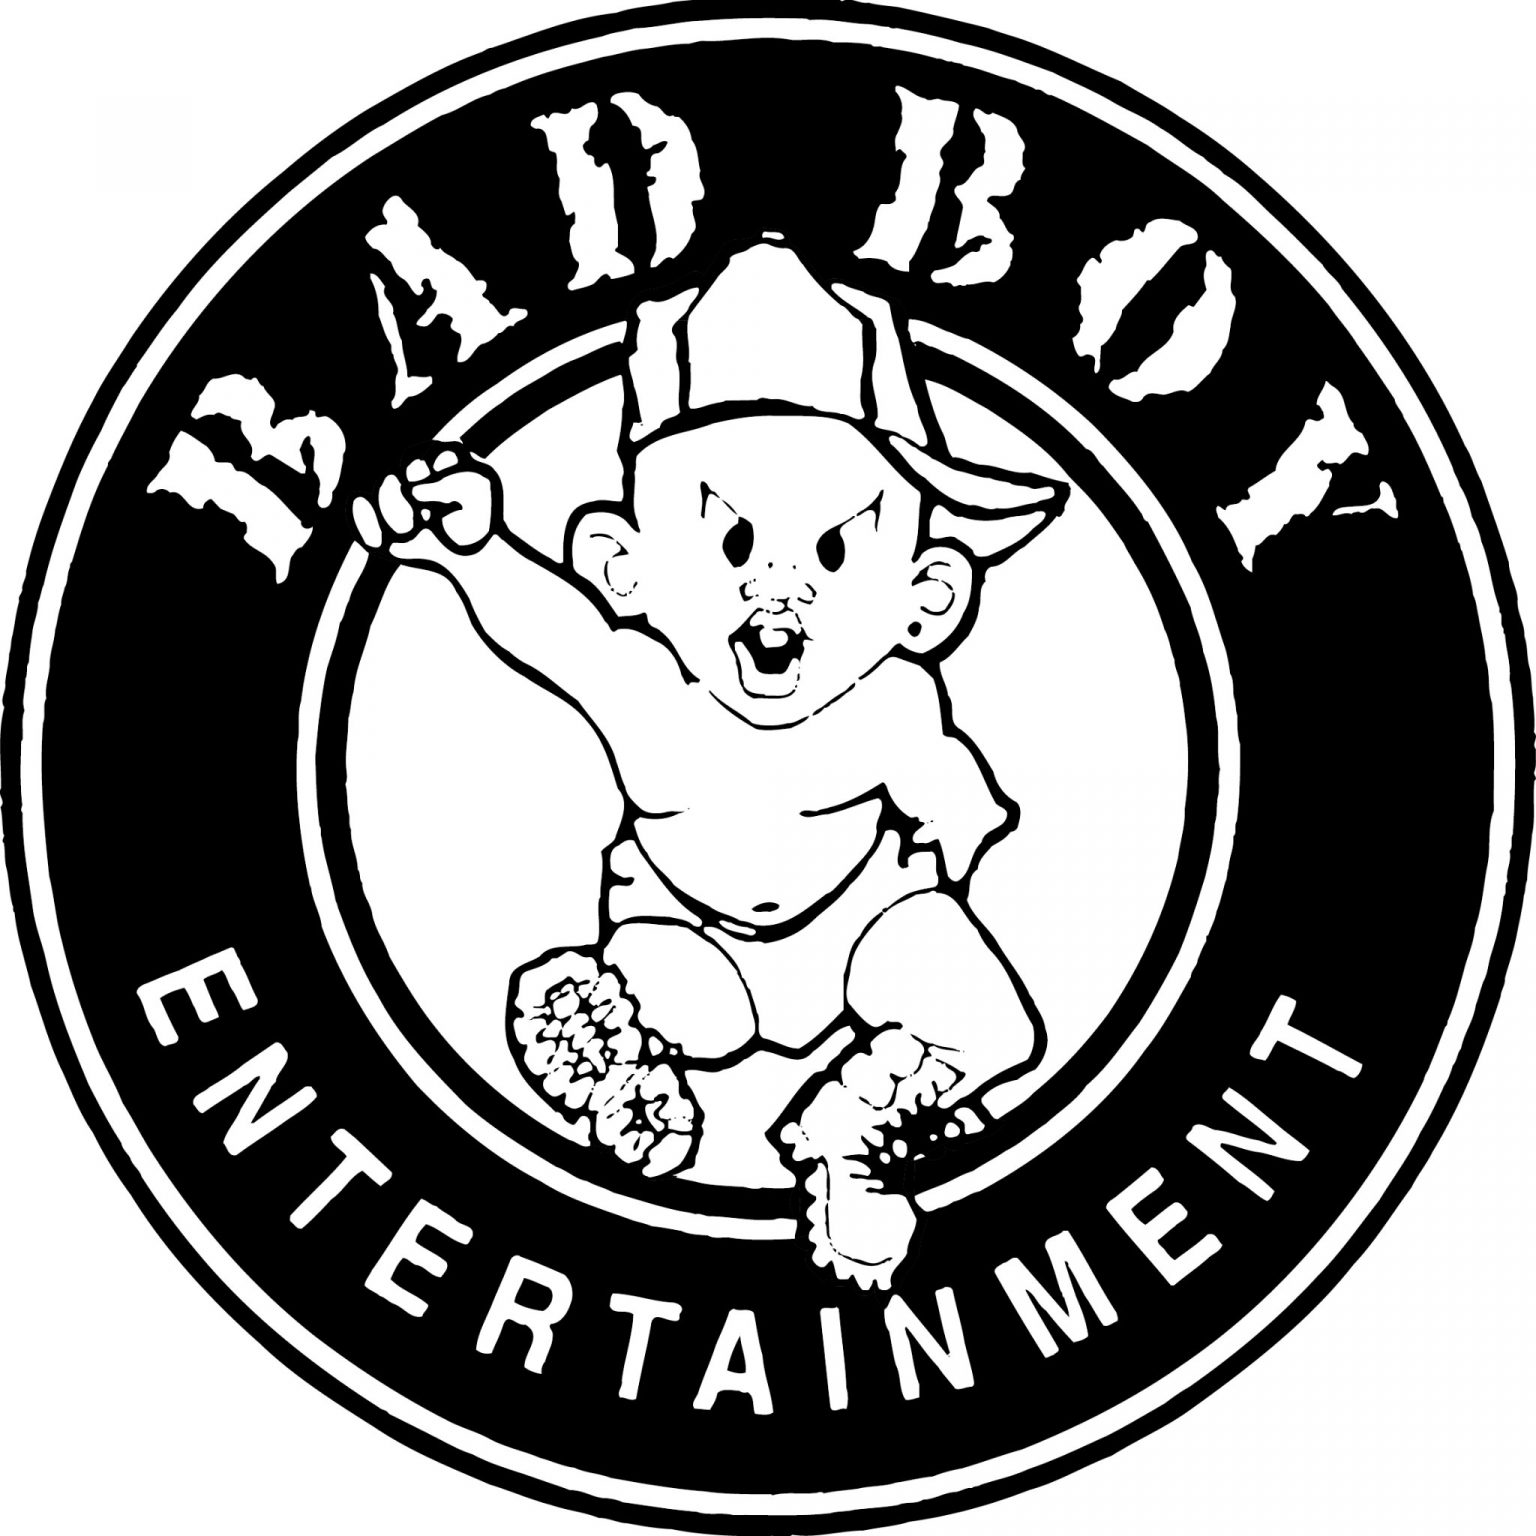 badboy